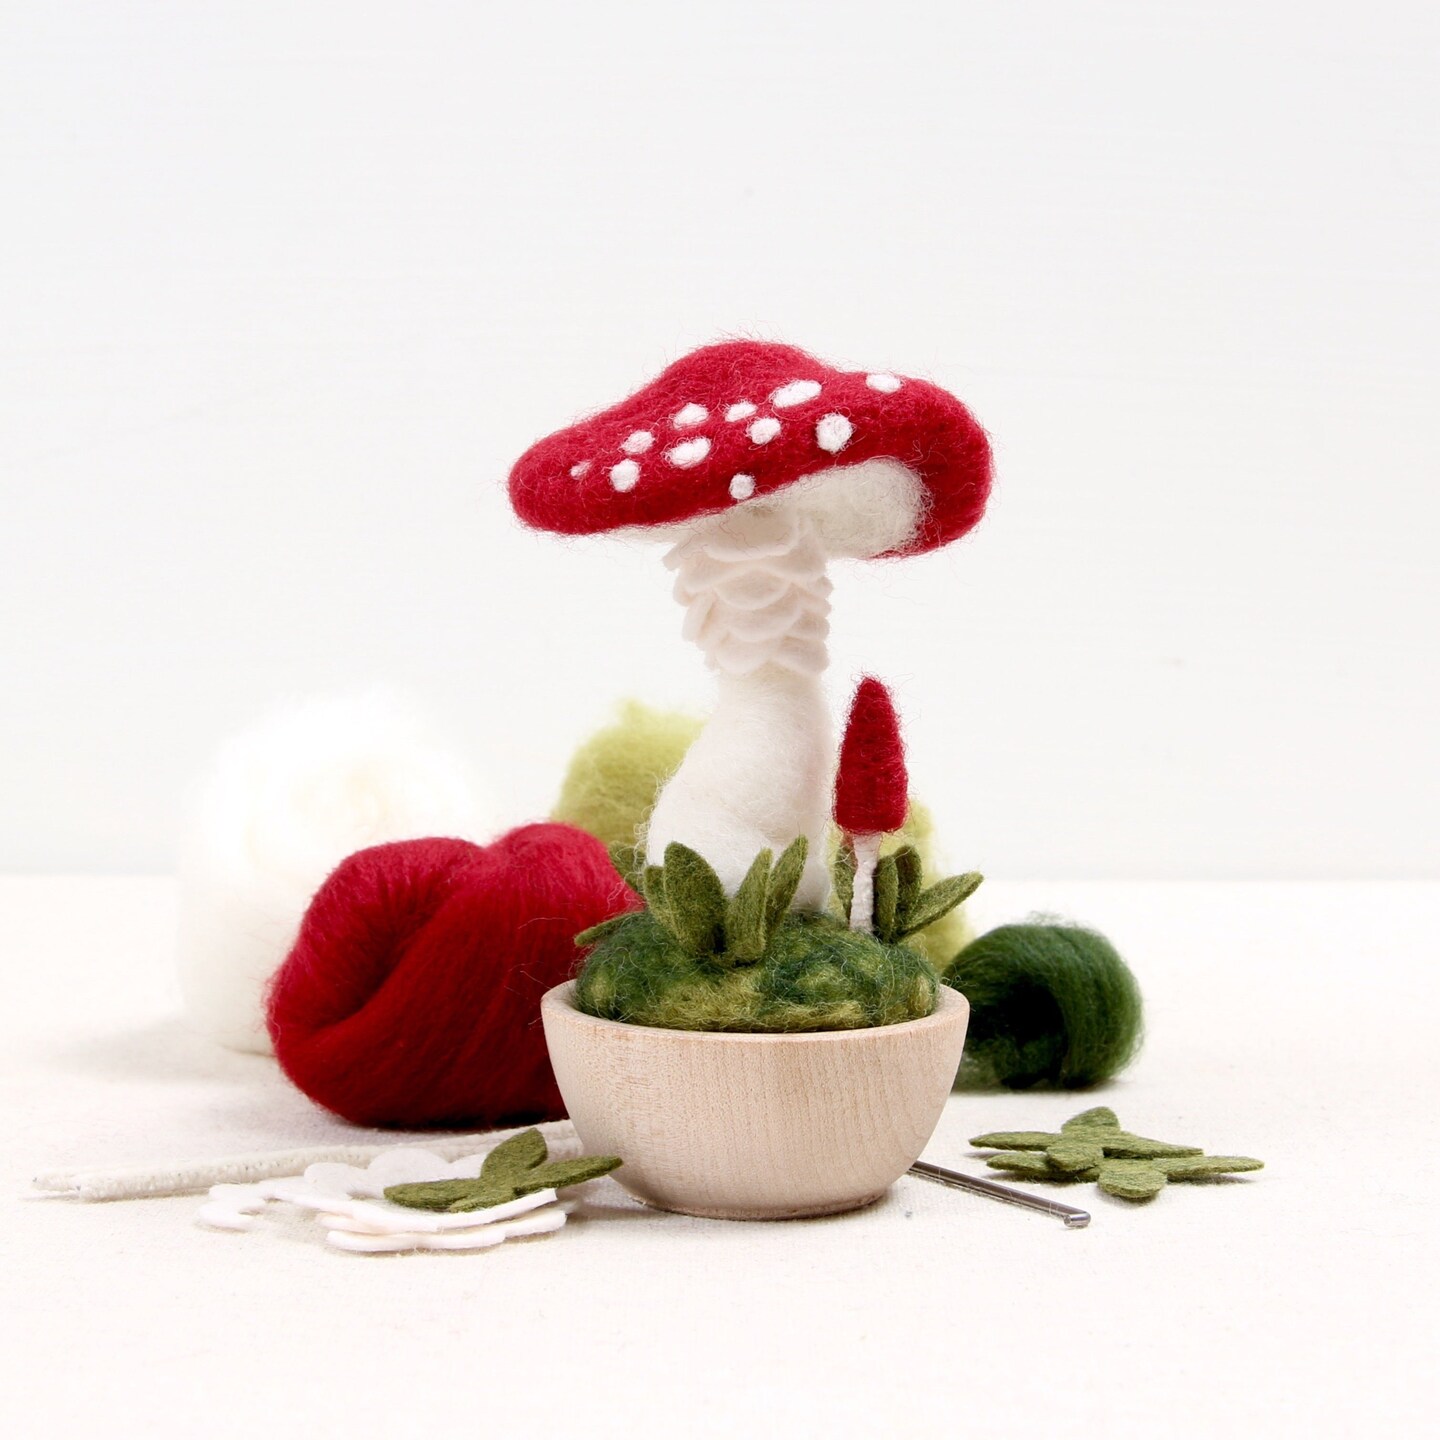 Mushroom Needle Felting Kit, Crimson Toadstool